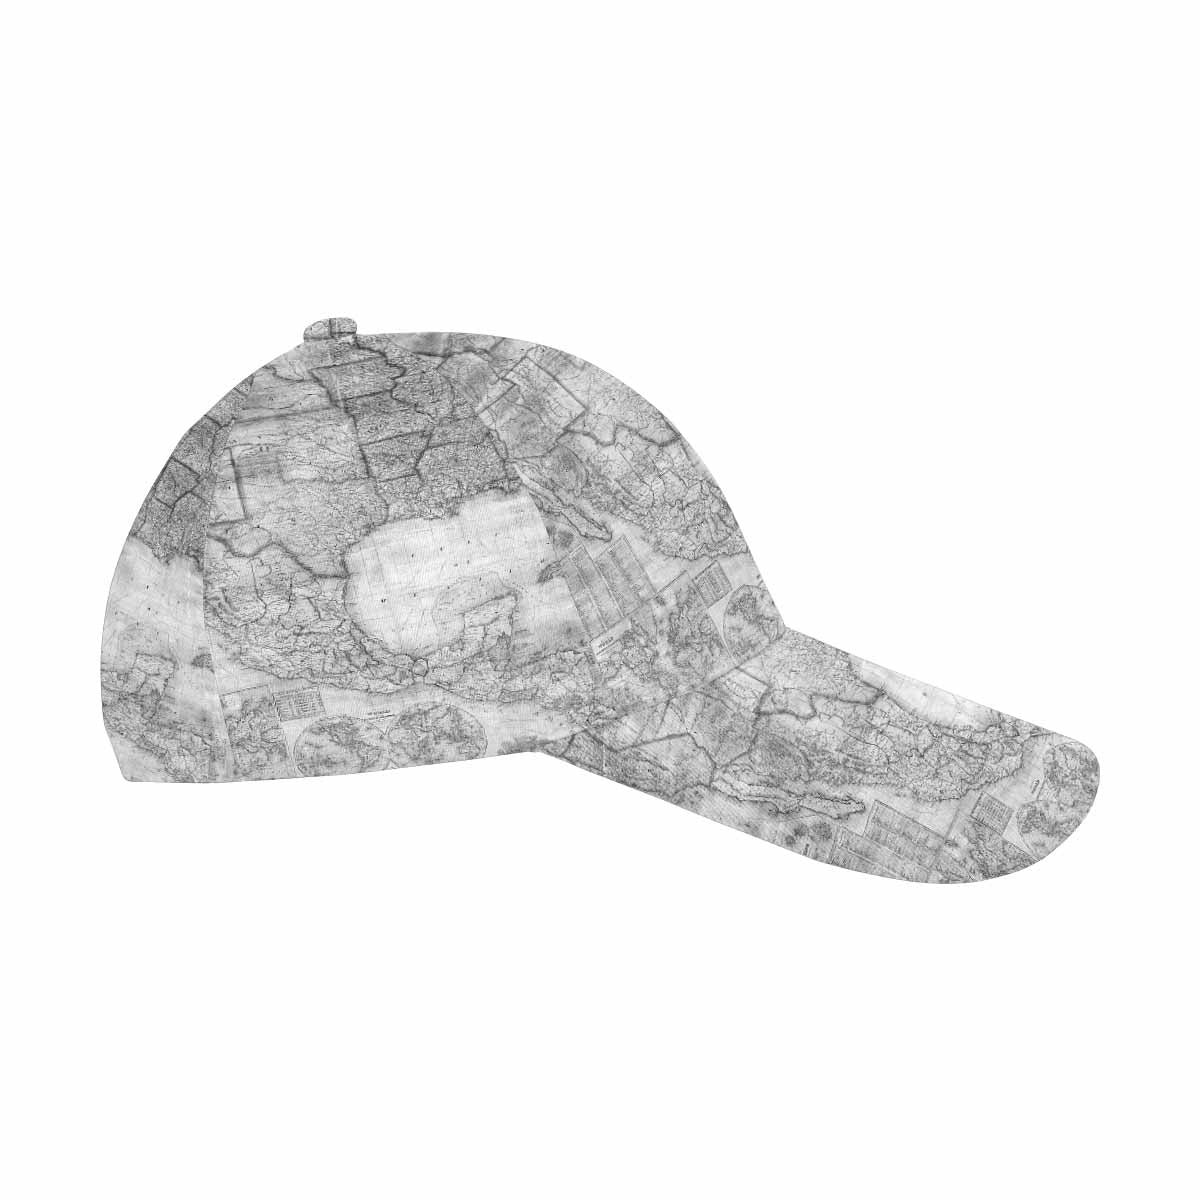 Antique Map design dad cap, trucker hat, Design 26